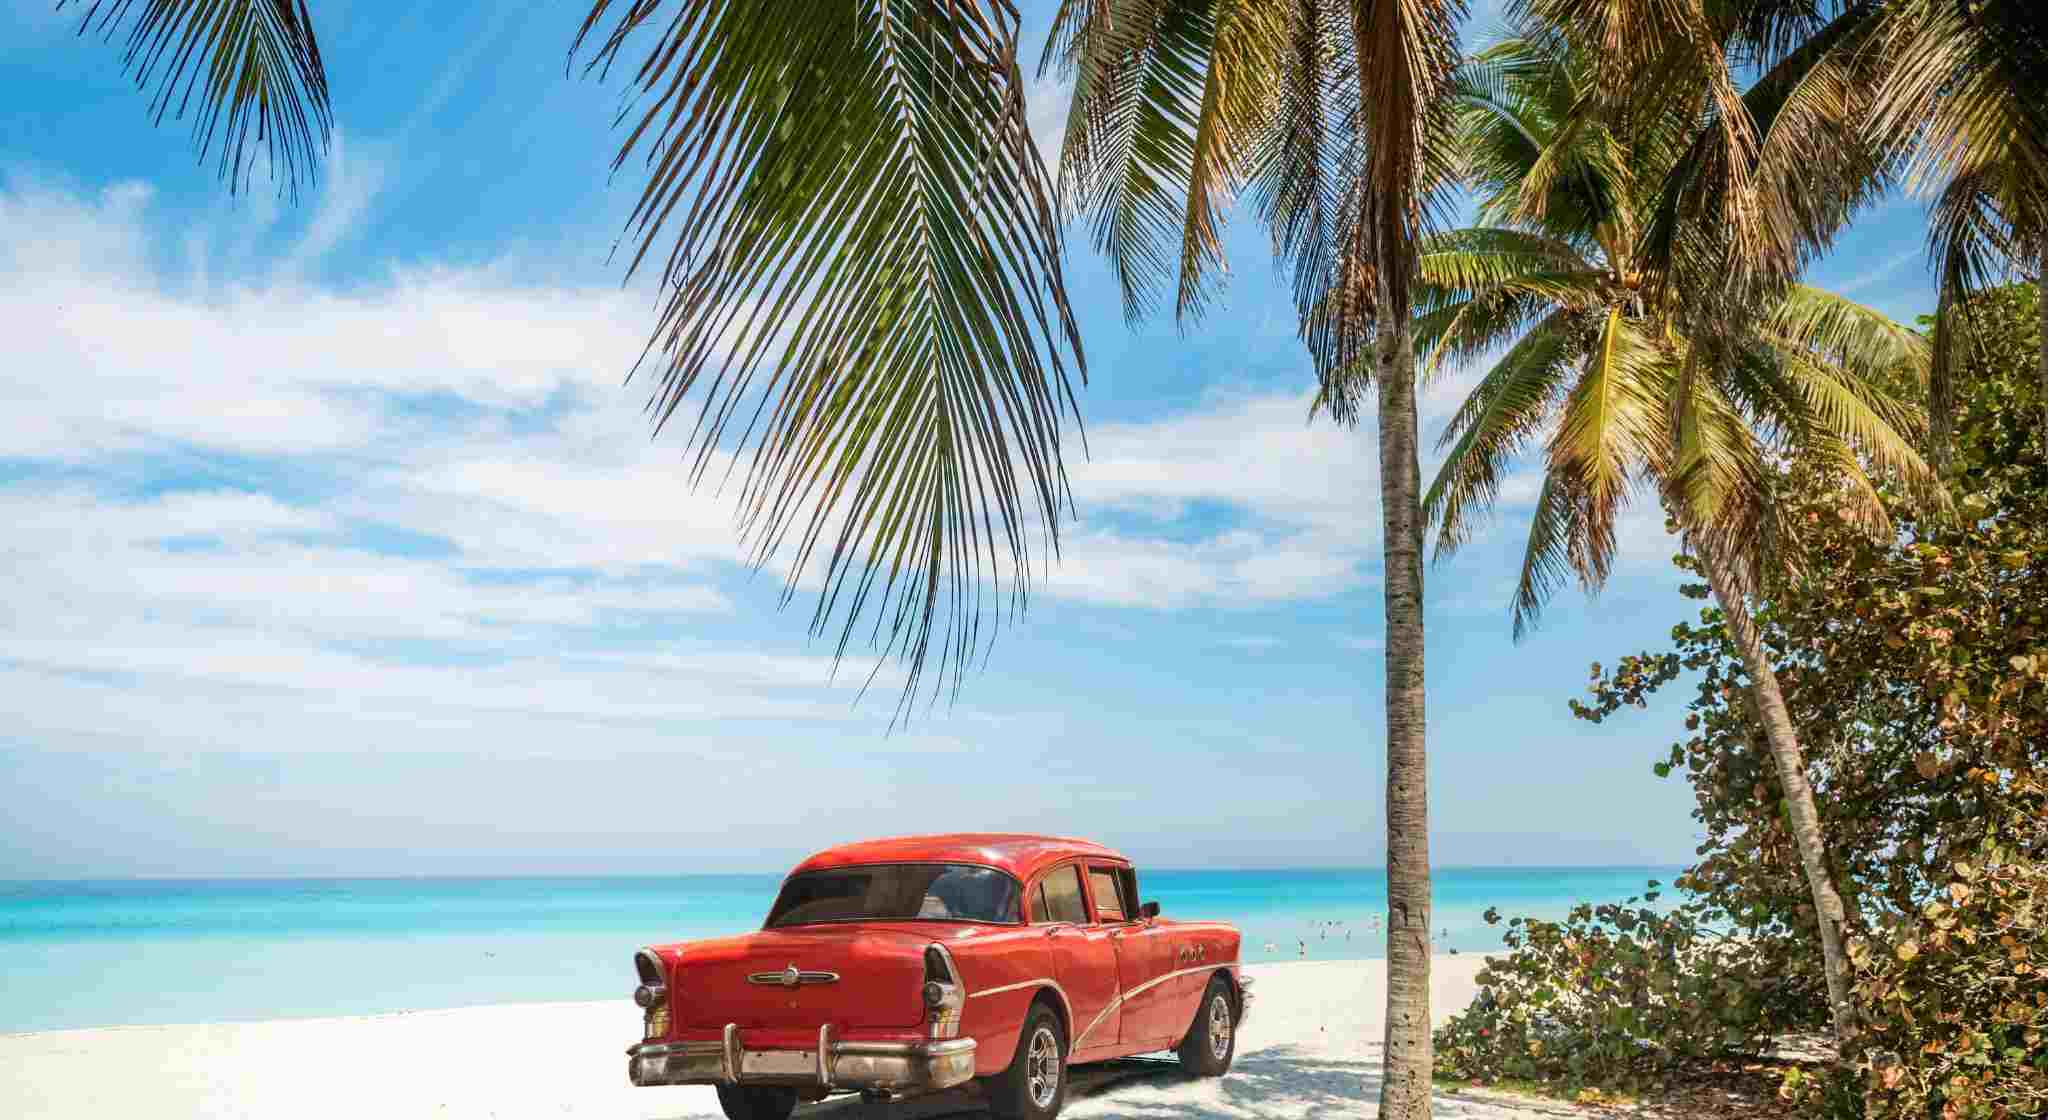 Vintage Car on Varadero Beach, Cuba